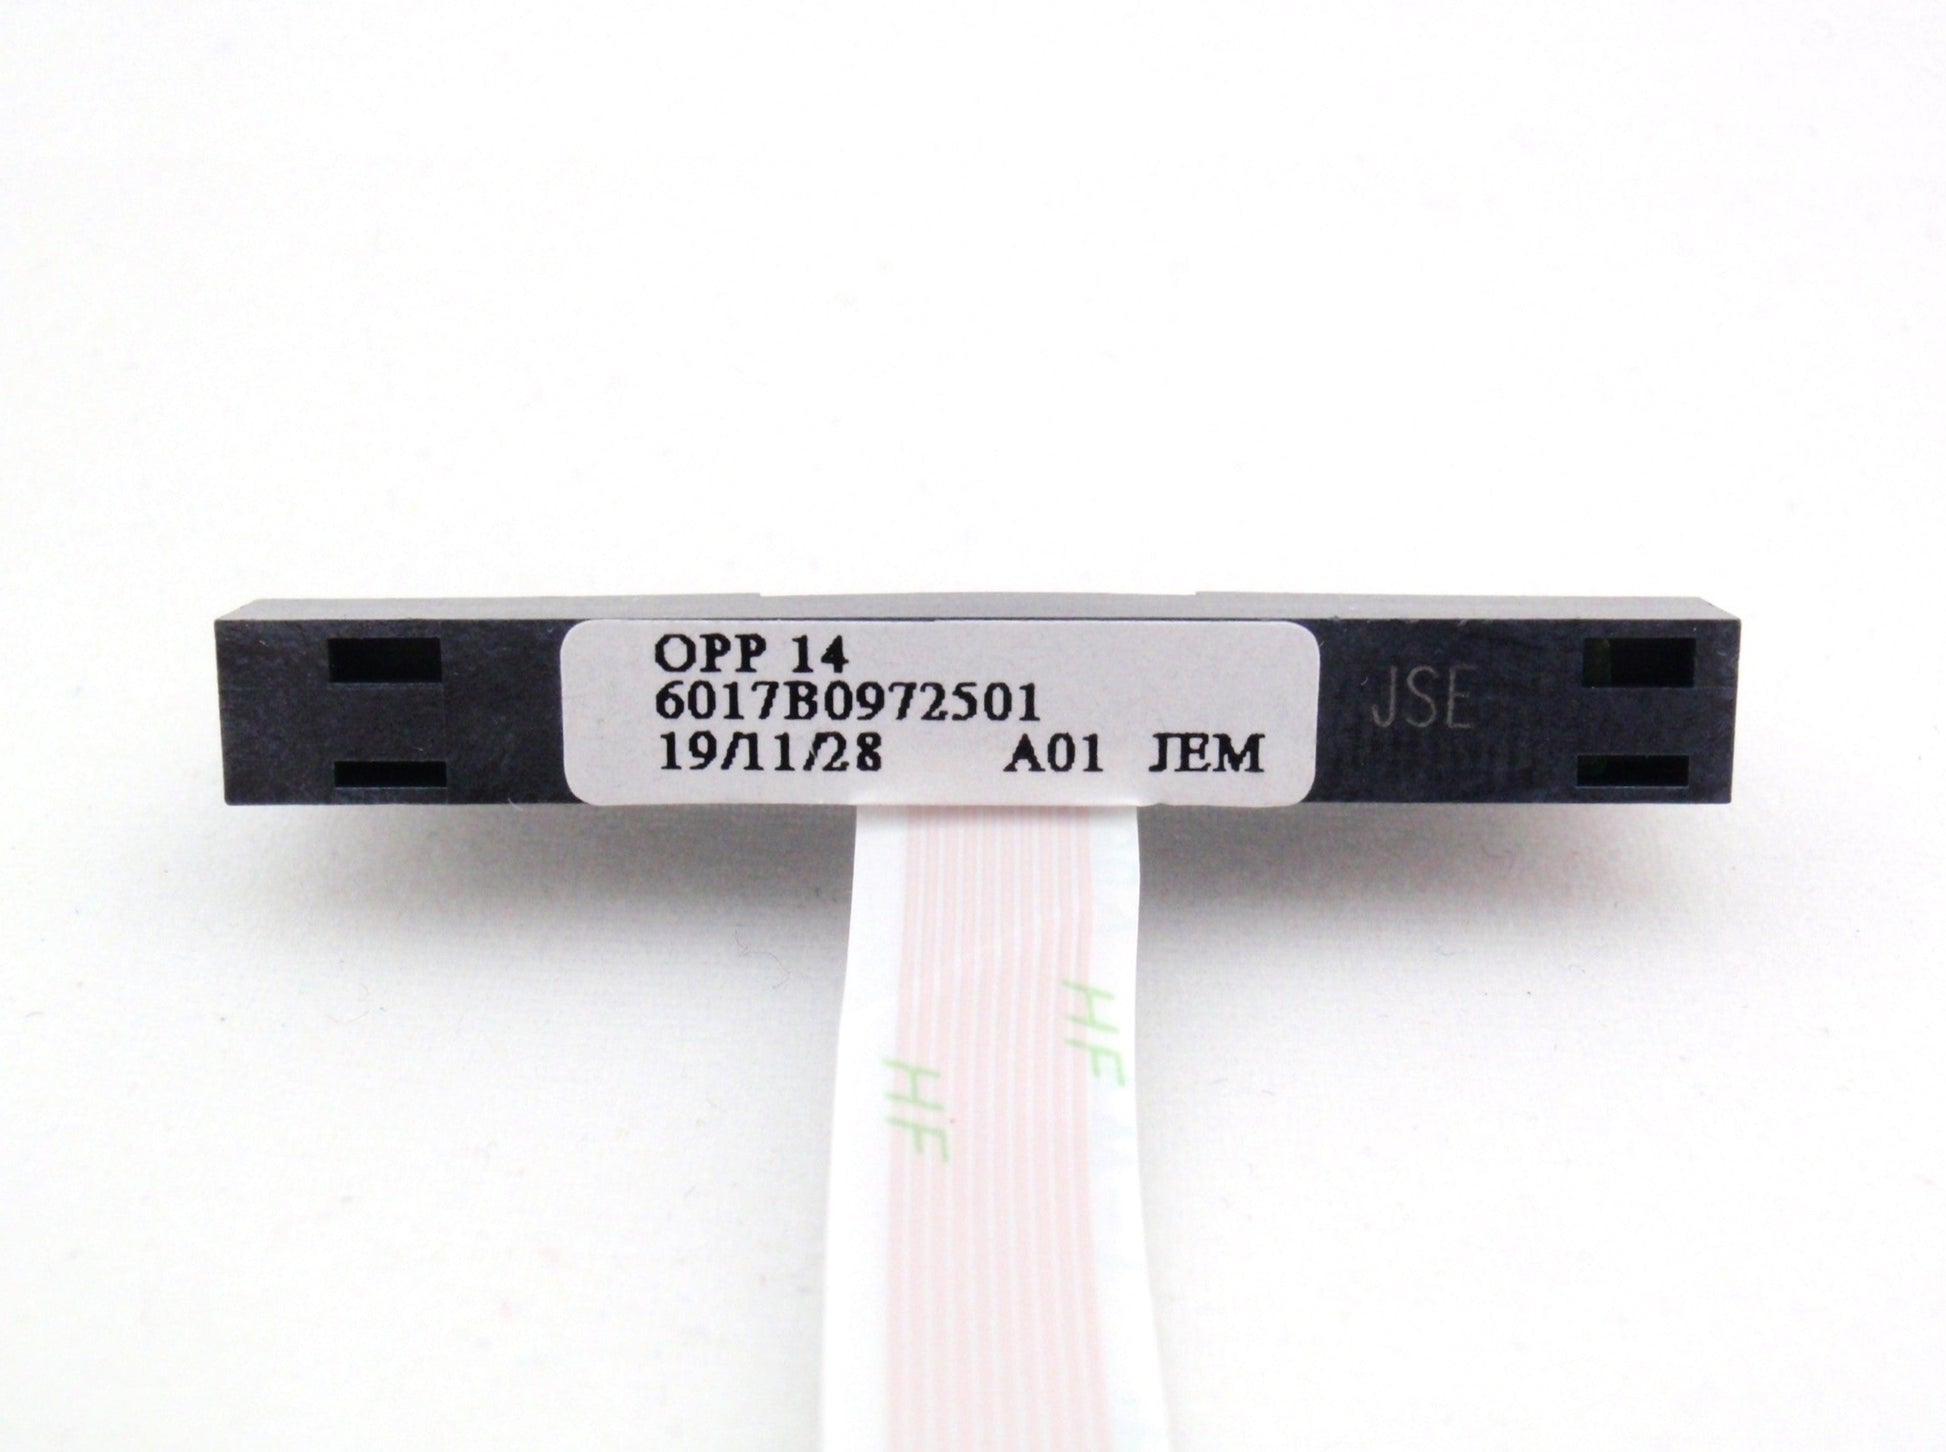 HP Hard Drive HDD SSD SATA Connector Cable 14-CF 14S-CF 14S-CR 14Q-CY 14-DF 14-DK 14S-DK 14S-DM 14S-DP 14S-ER 340 348 G5 G7 6017B0971201 6017B0972501 L23187-001